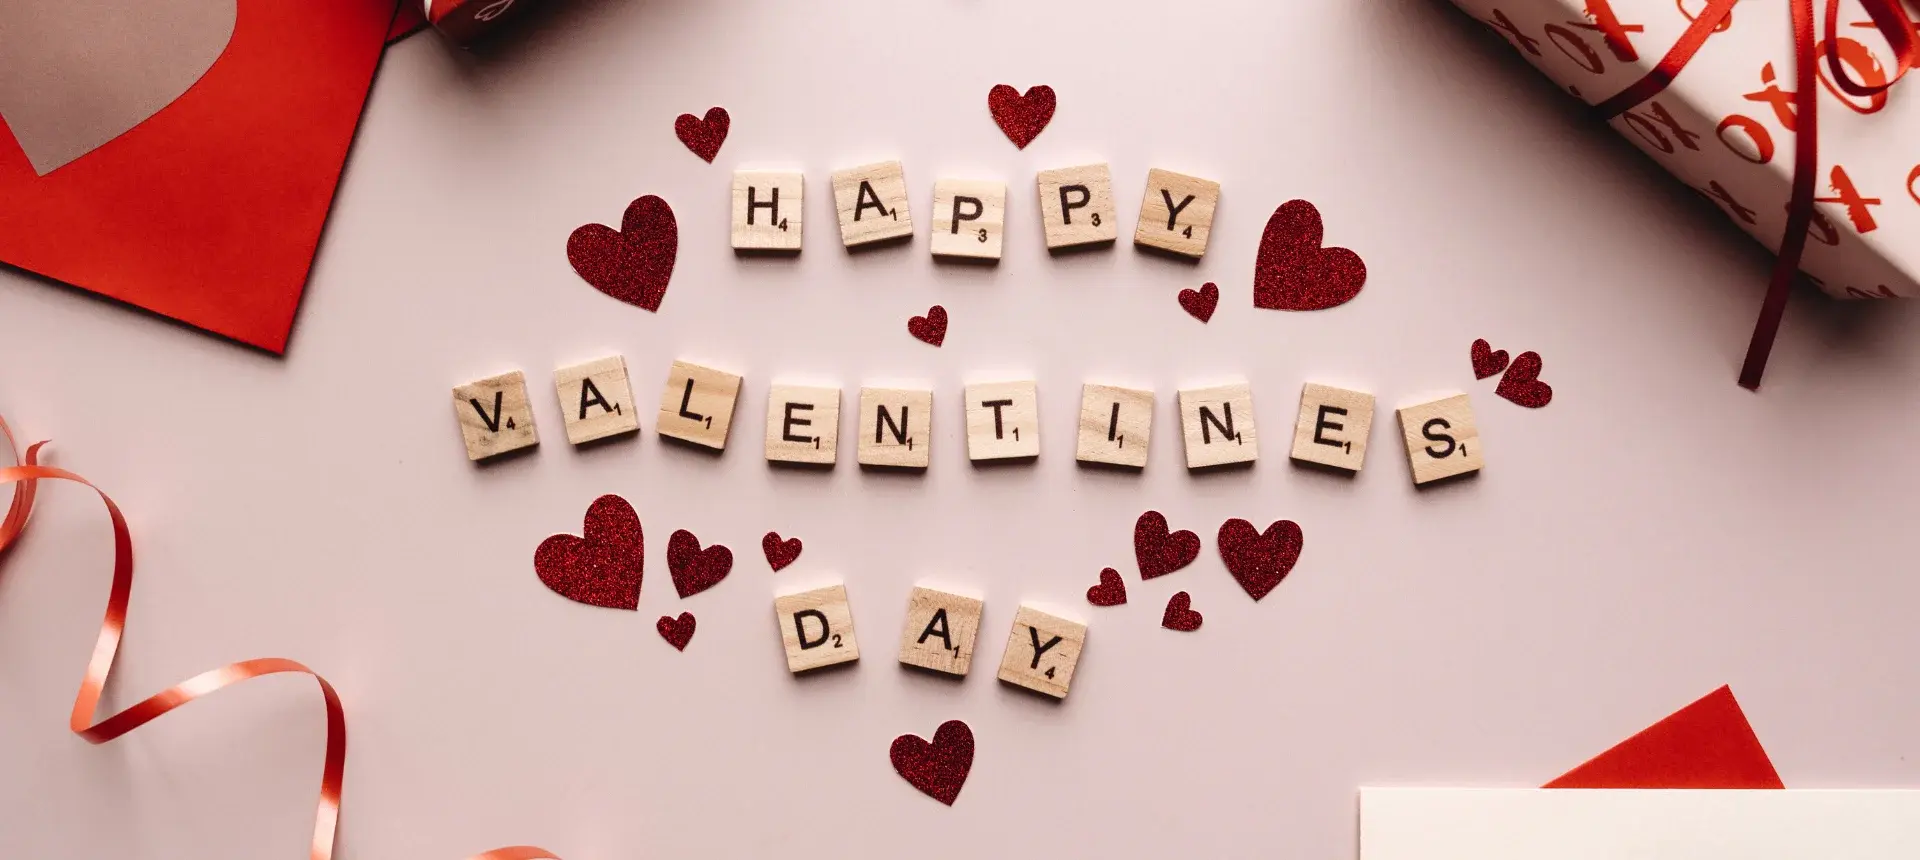 Enamora tus clientes en San Valentín con promociones especiales